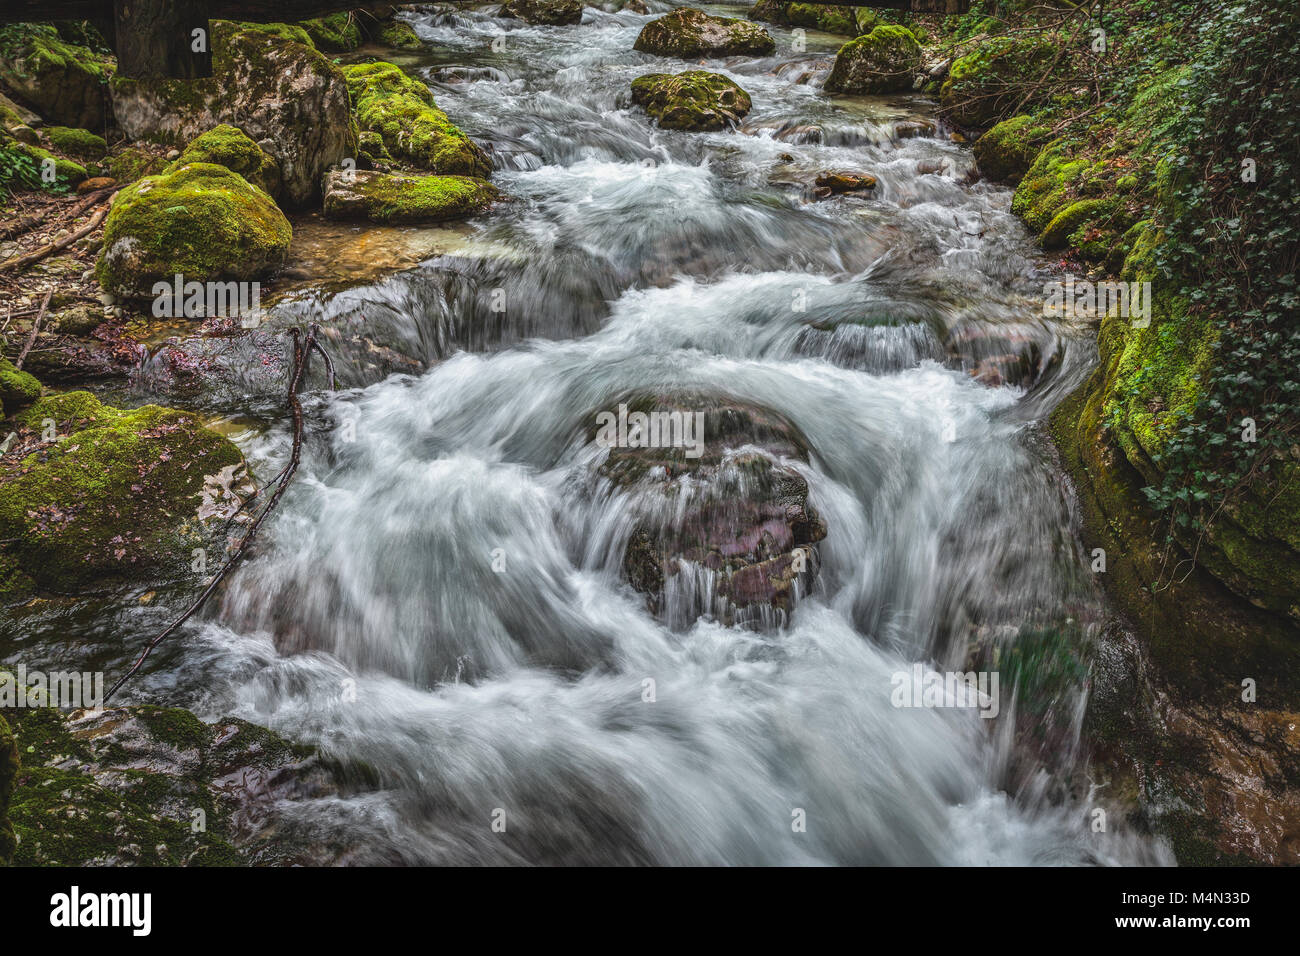 Rumore e acque tumultuose del torrente Orfento. Parco Nazionale della Majella, Abruzzo, Italia, Europa Foto Stock